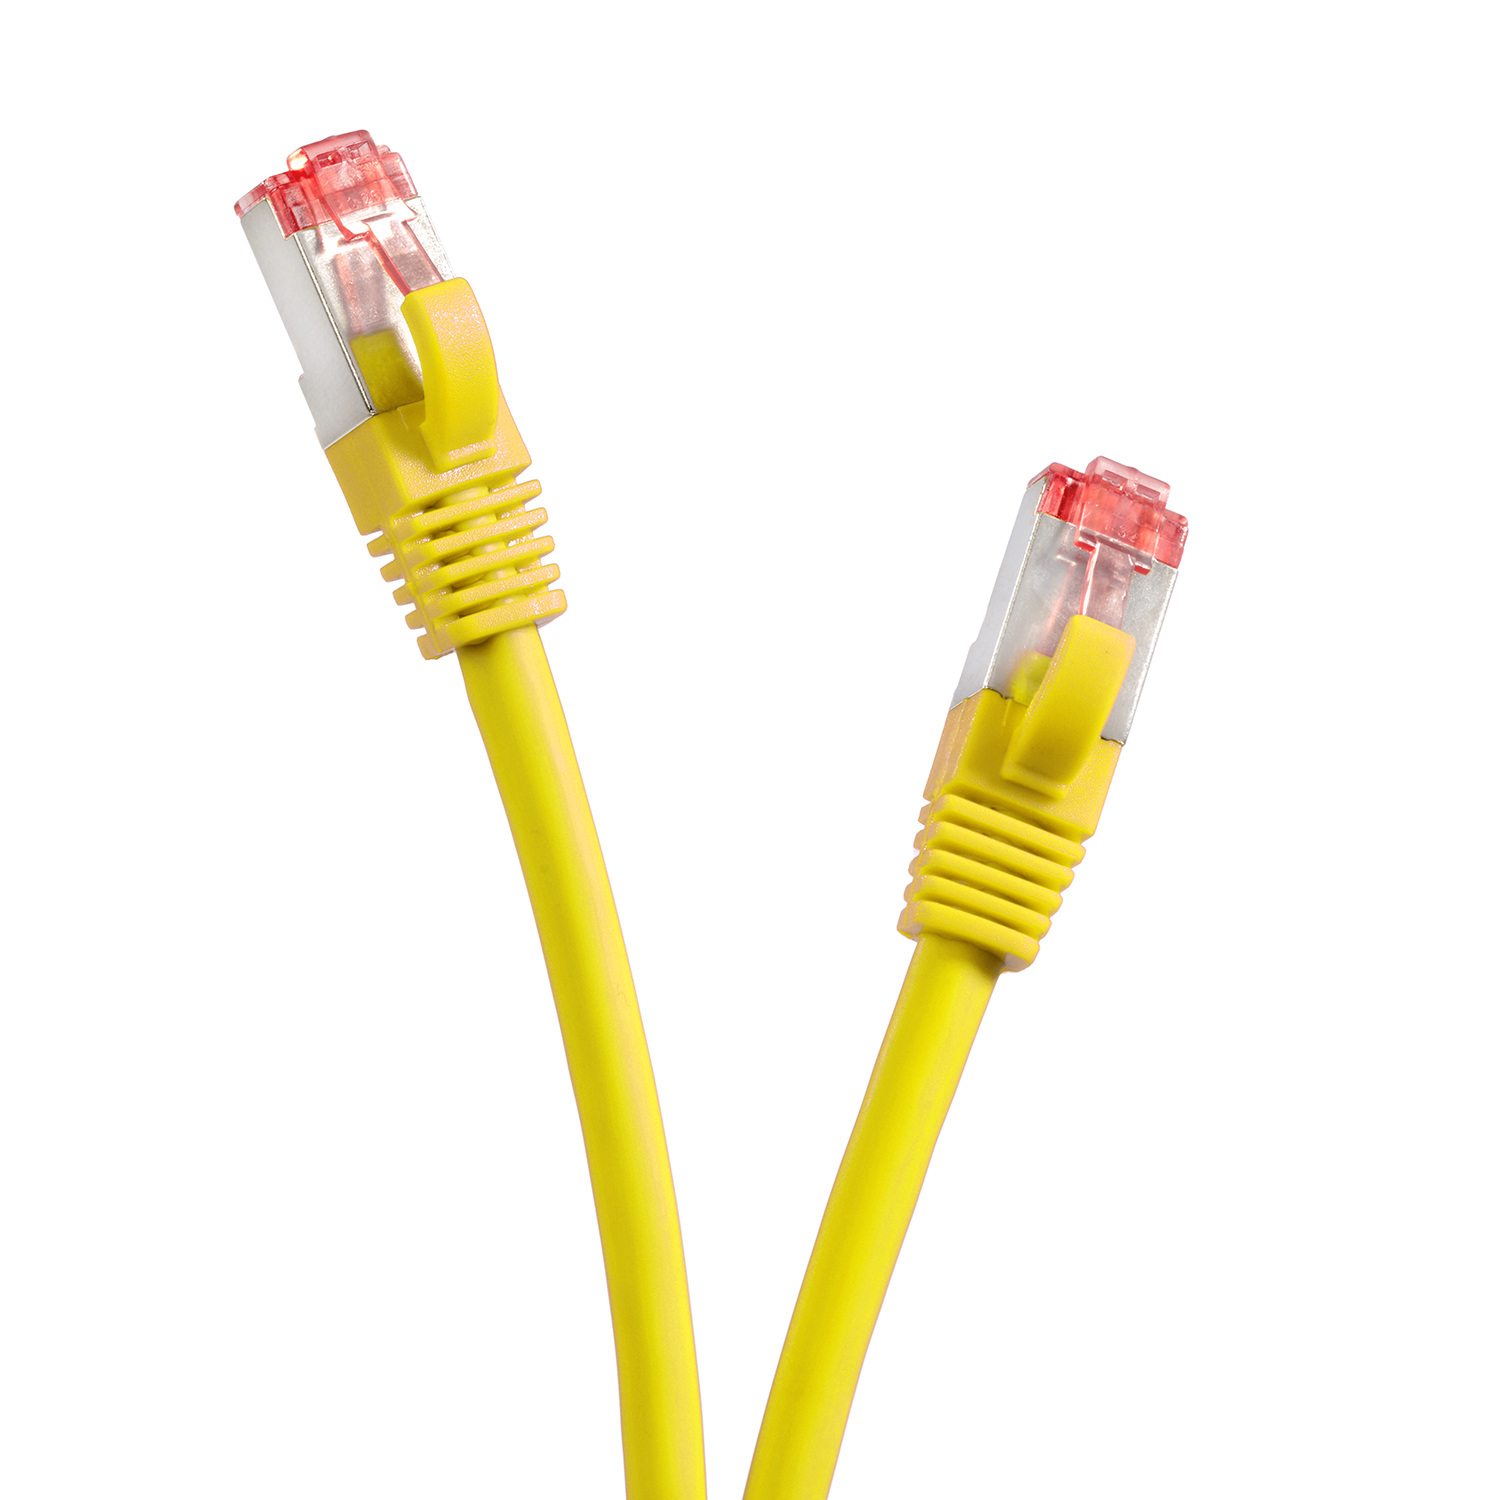 TPFNET 5er 1000Mbit, 0,50m gelb, Patchkabel Pack 0,5 S/FTP m / Netzwerkkabel Netzwerkkabel